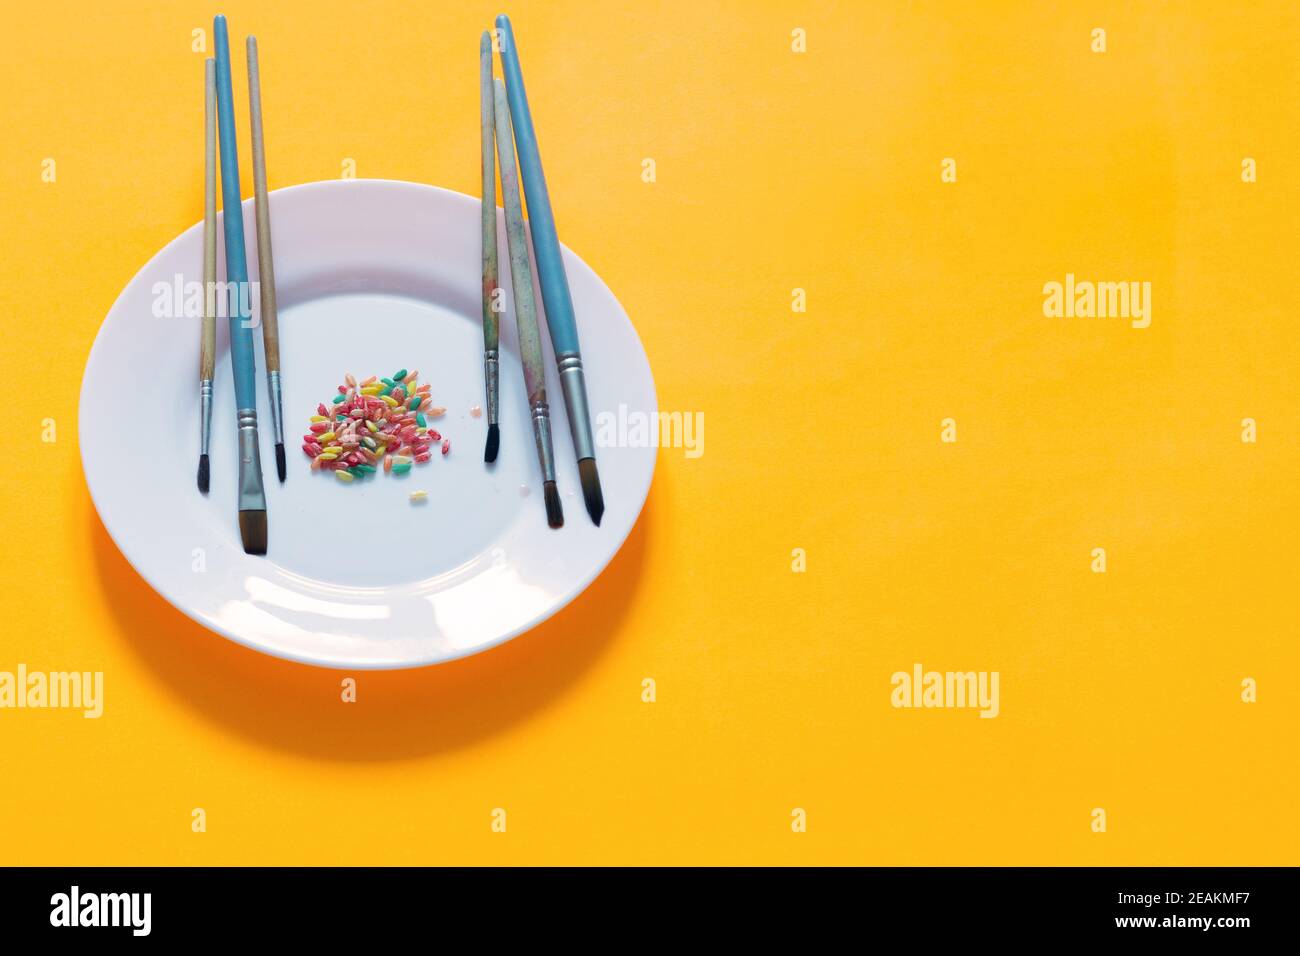 Spazzole e riso dipinte in diversi colori su un piatto, sfondo giallo Foto Stock